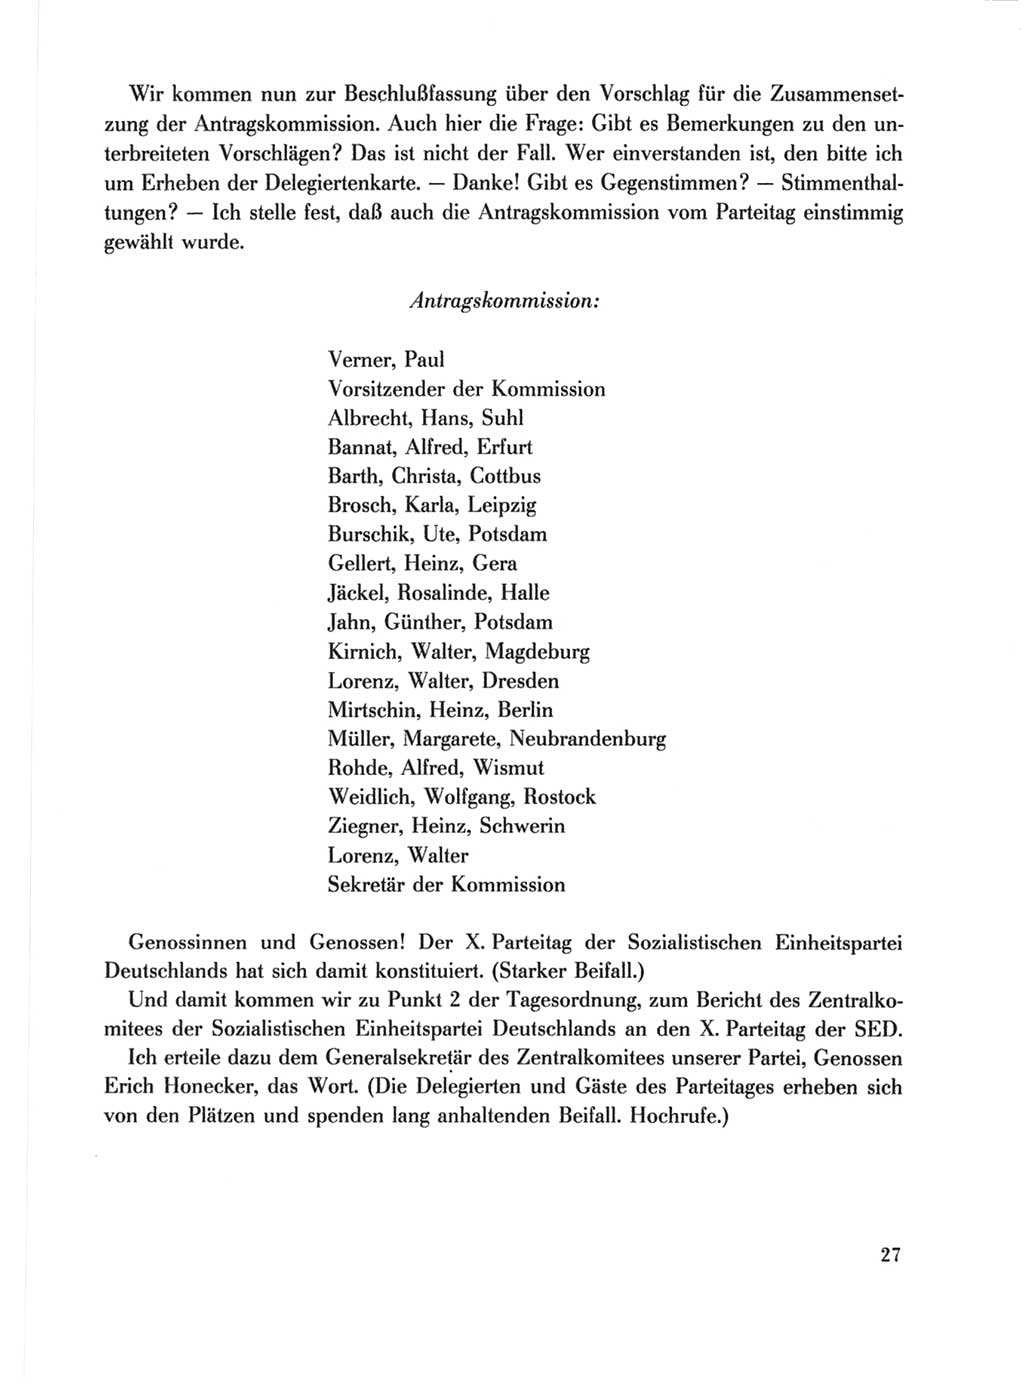 Protokoll der Verhandlungen des Ⅹ. Parteitages der Sozialistischen Einheitspartei Deutschlands (SED) [Deutsche Demokratische Republik (DDR)] 1981, Band 1, Seite 27 (Prot. Verh. Ⅹ. PT SED DDR 1981, Bd. 1, S. 27)